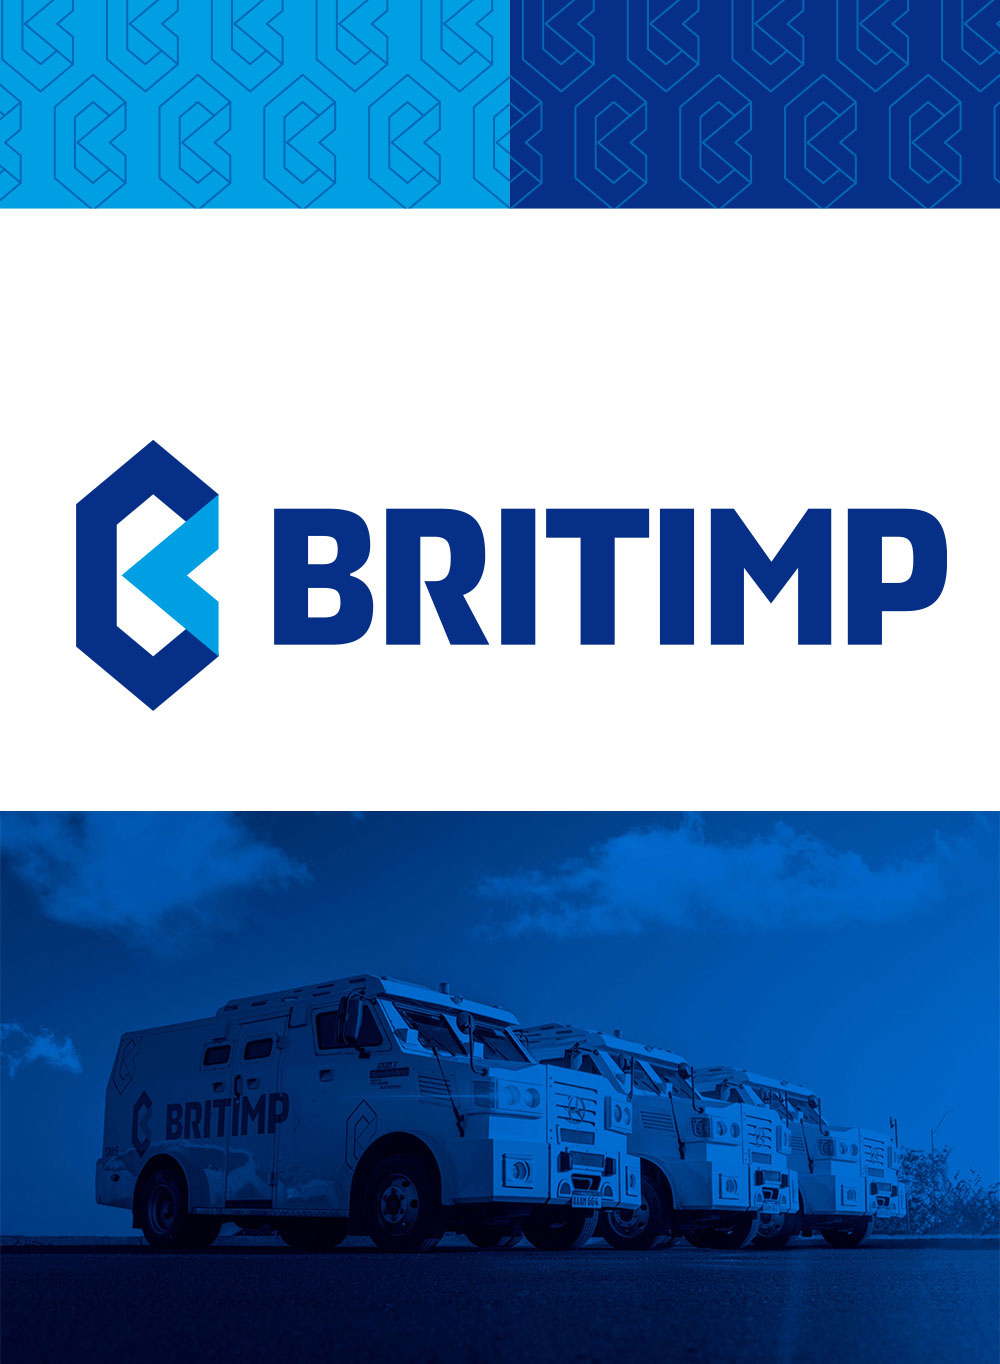 Britimp Branding